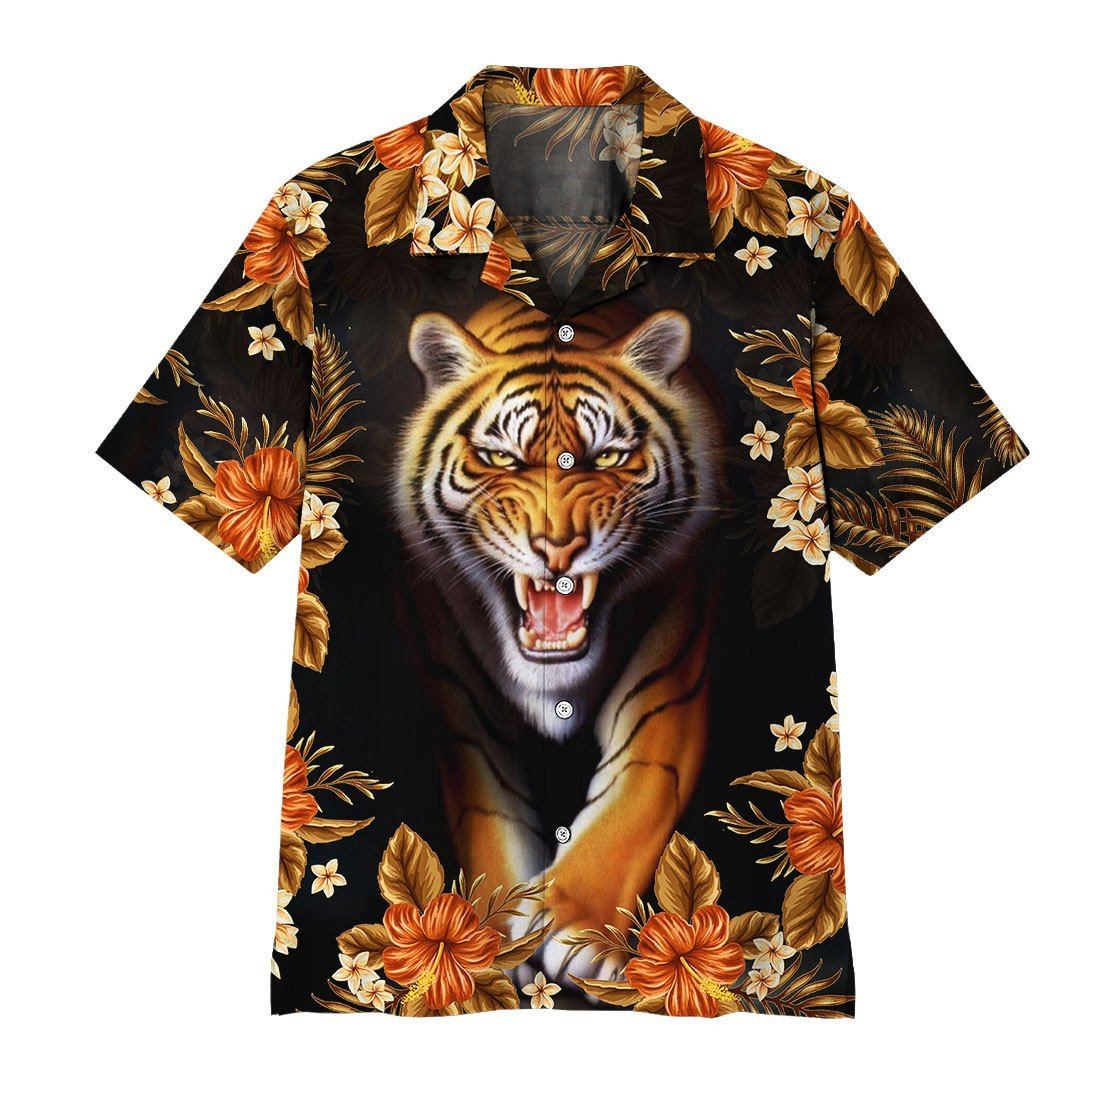 Gearhuman 3D Tiger Hawaii Shirt